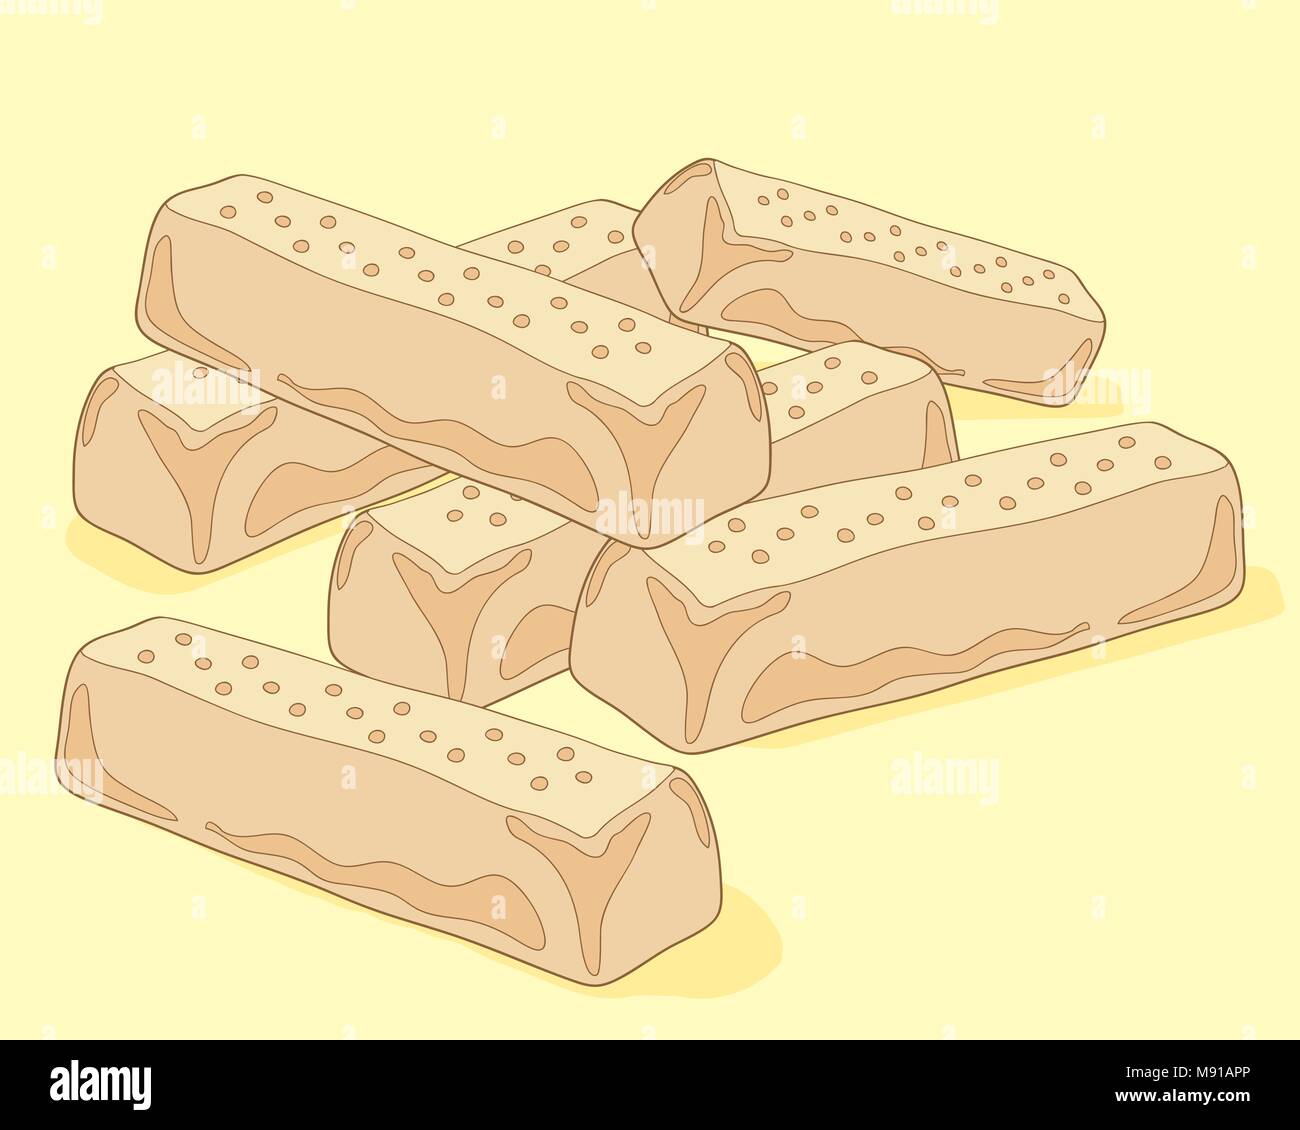 Un vecteur illustration en eps 8 format d'une pile de biscuits sablés sur un fond de citron pâle Illustration de Vecteur